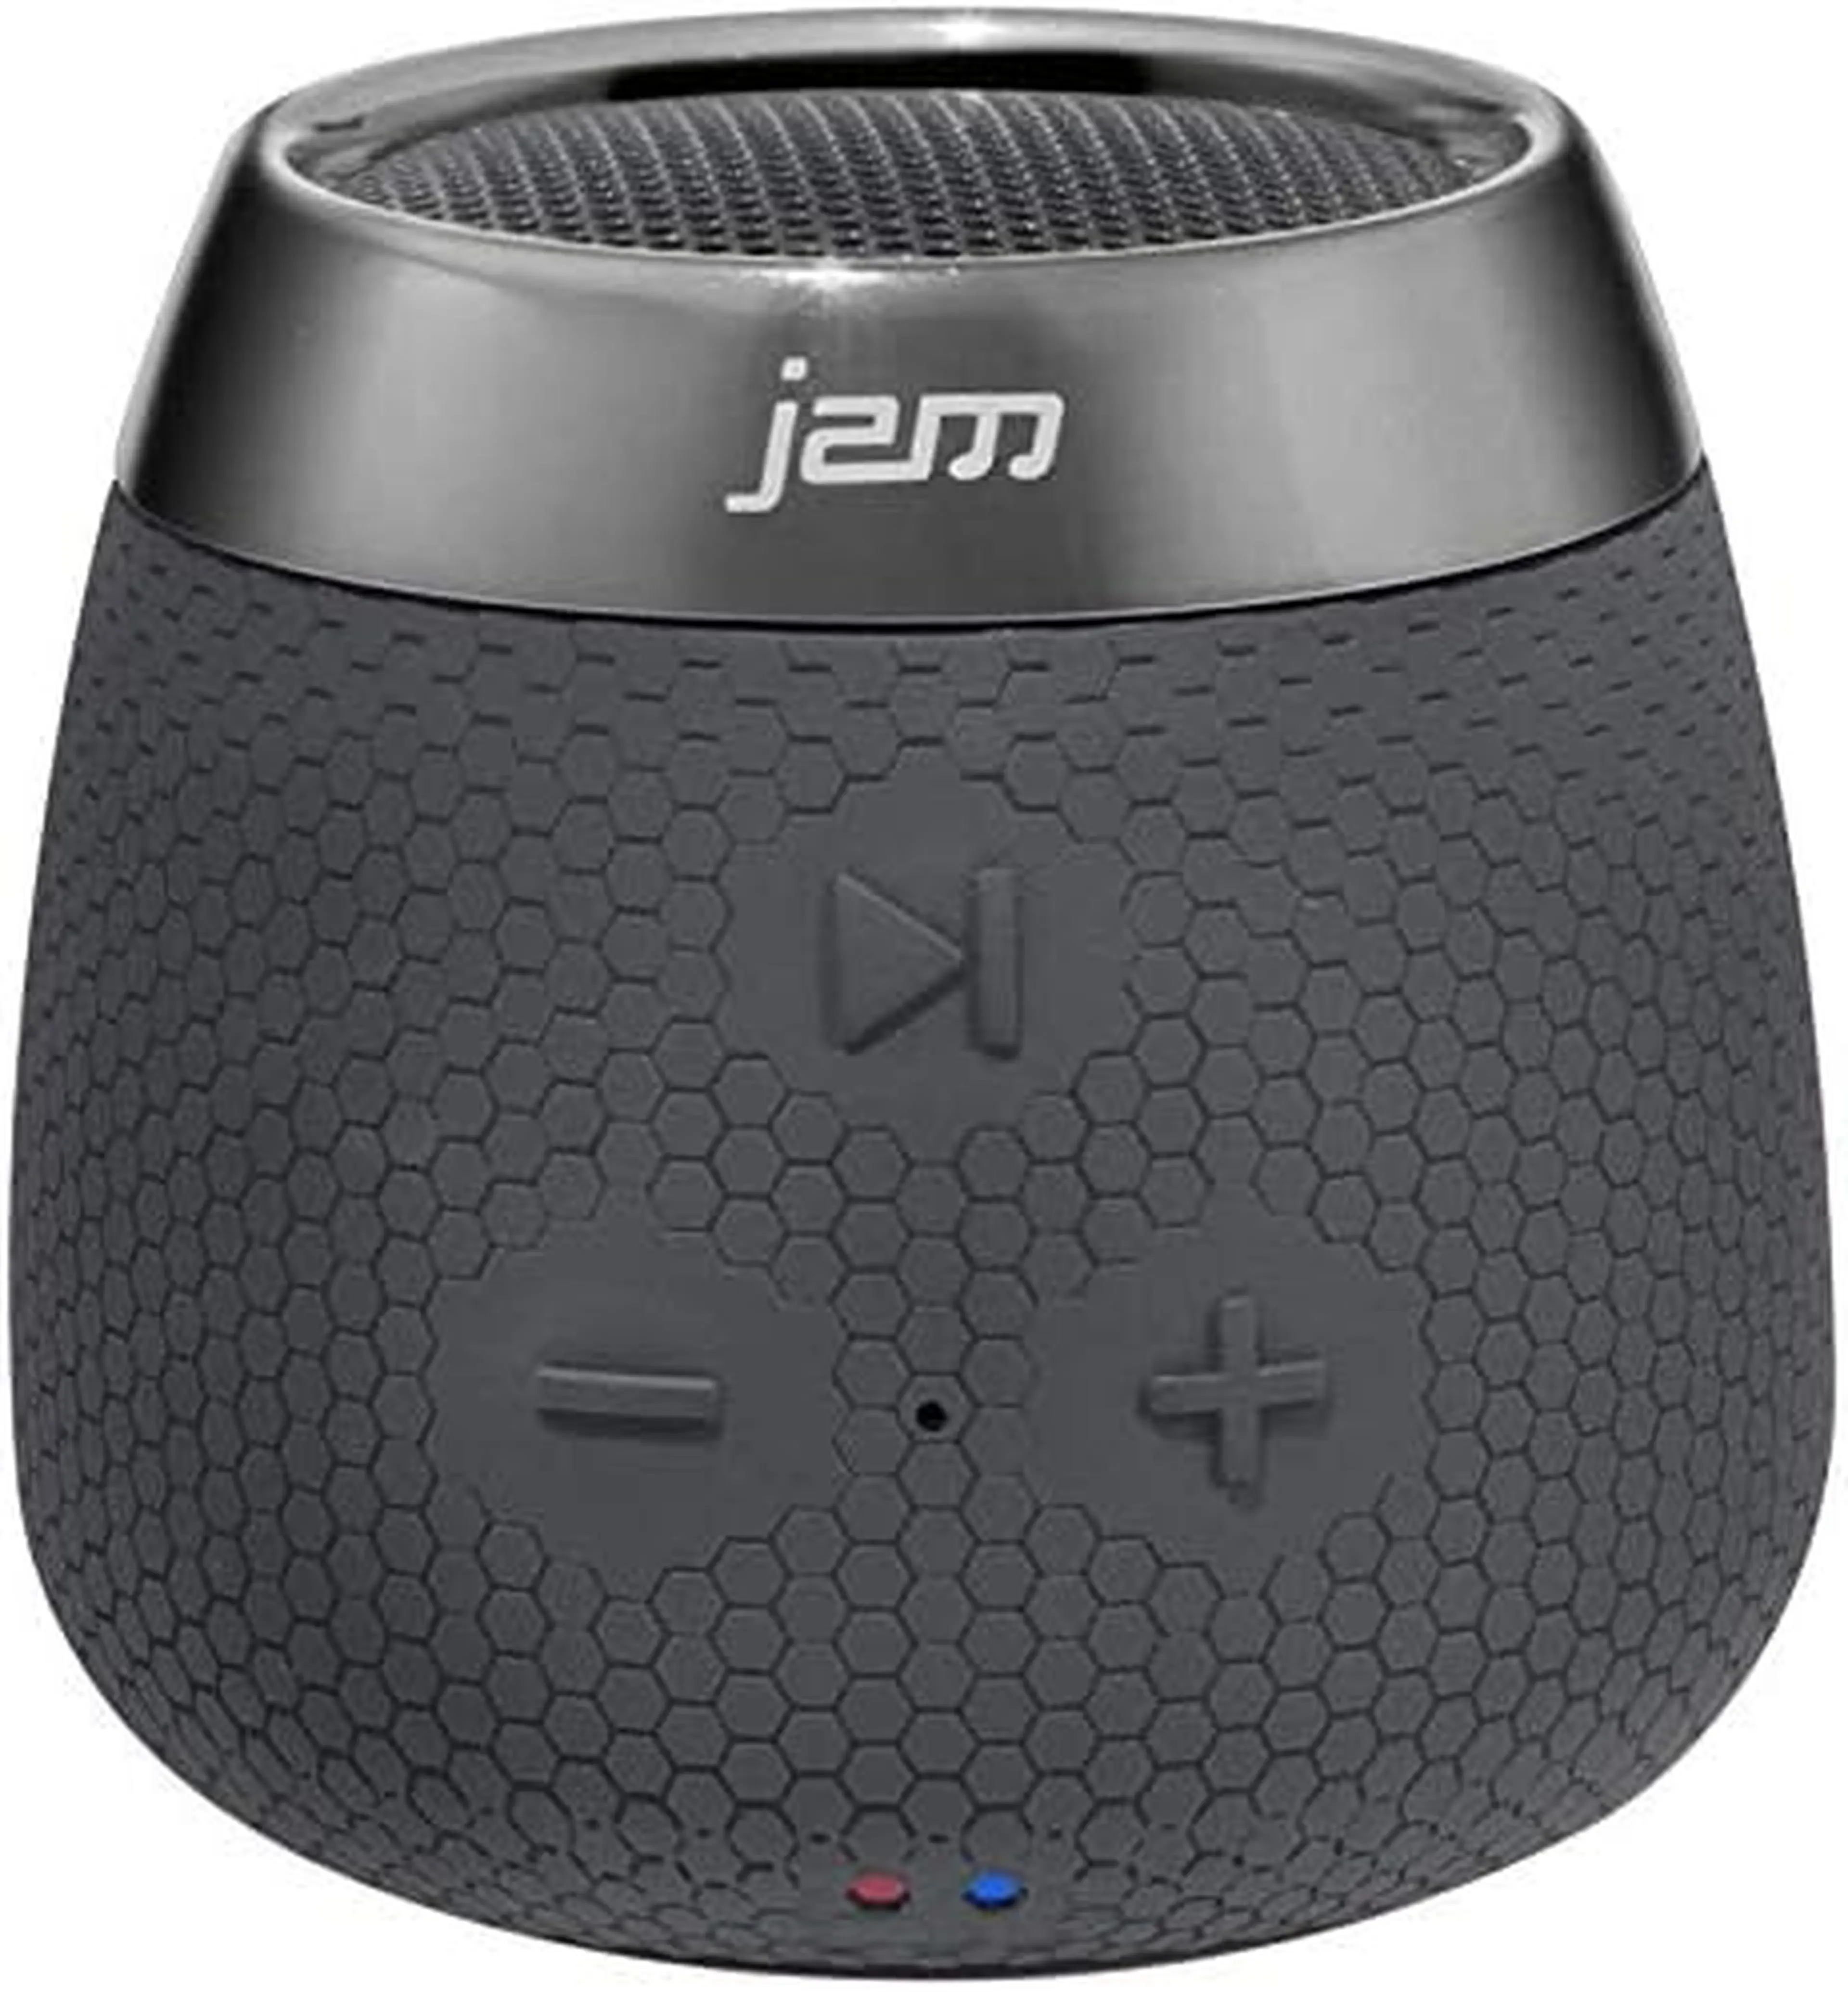 7. Boxa portabila JAM Replay Bluetooth Wireless Speaker - Neagra